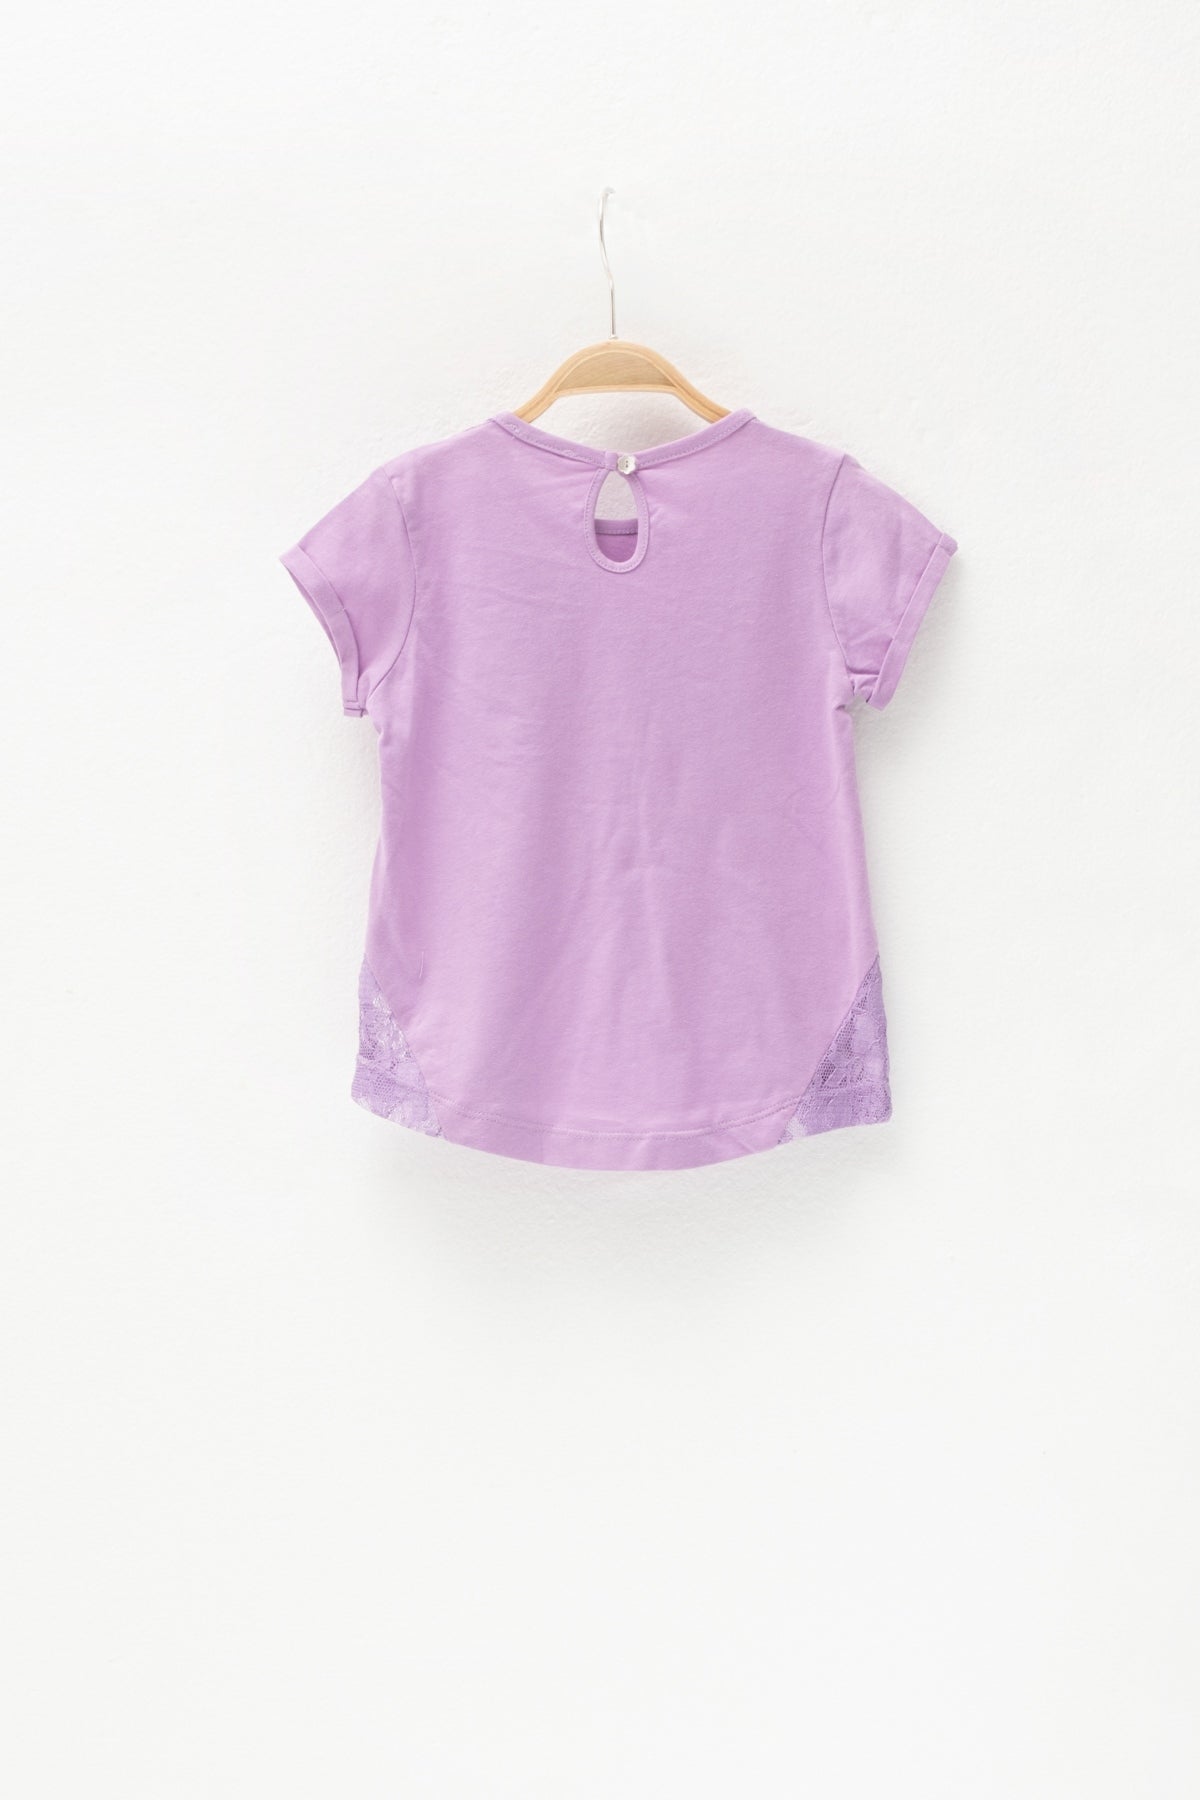 Kız Bebek Lila Dantel Parçalı ve Cepli T-Shirt (6ay-4yaş)-2